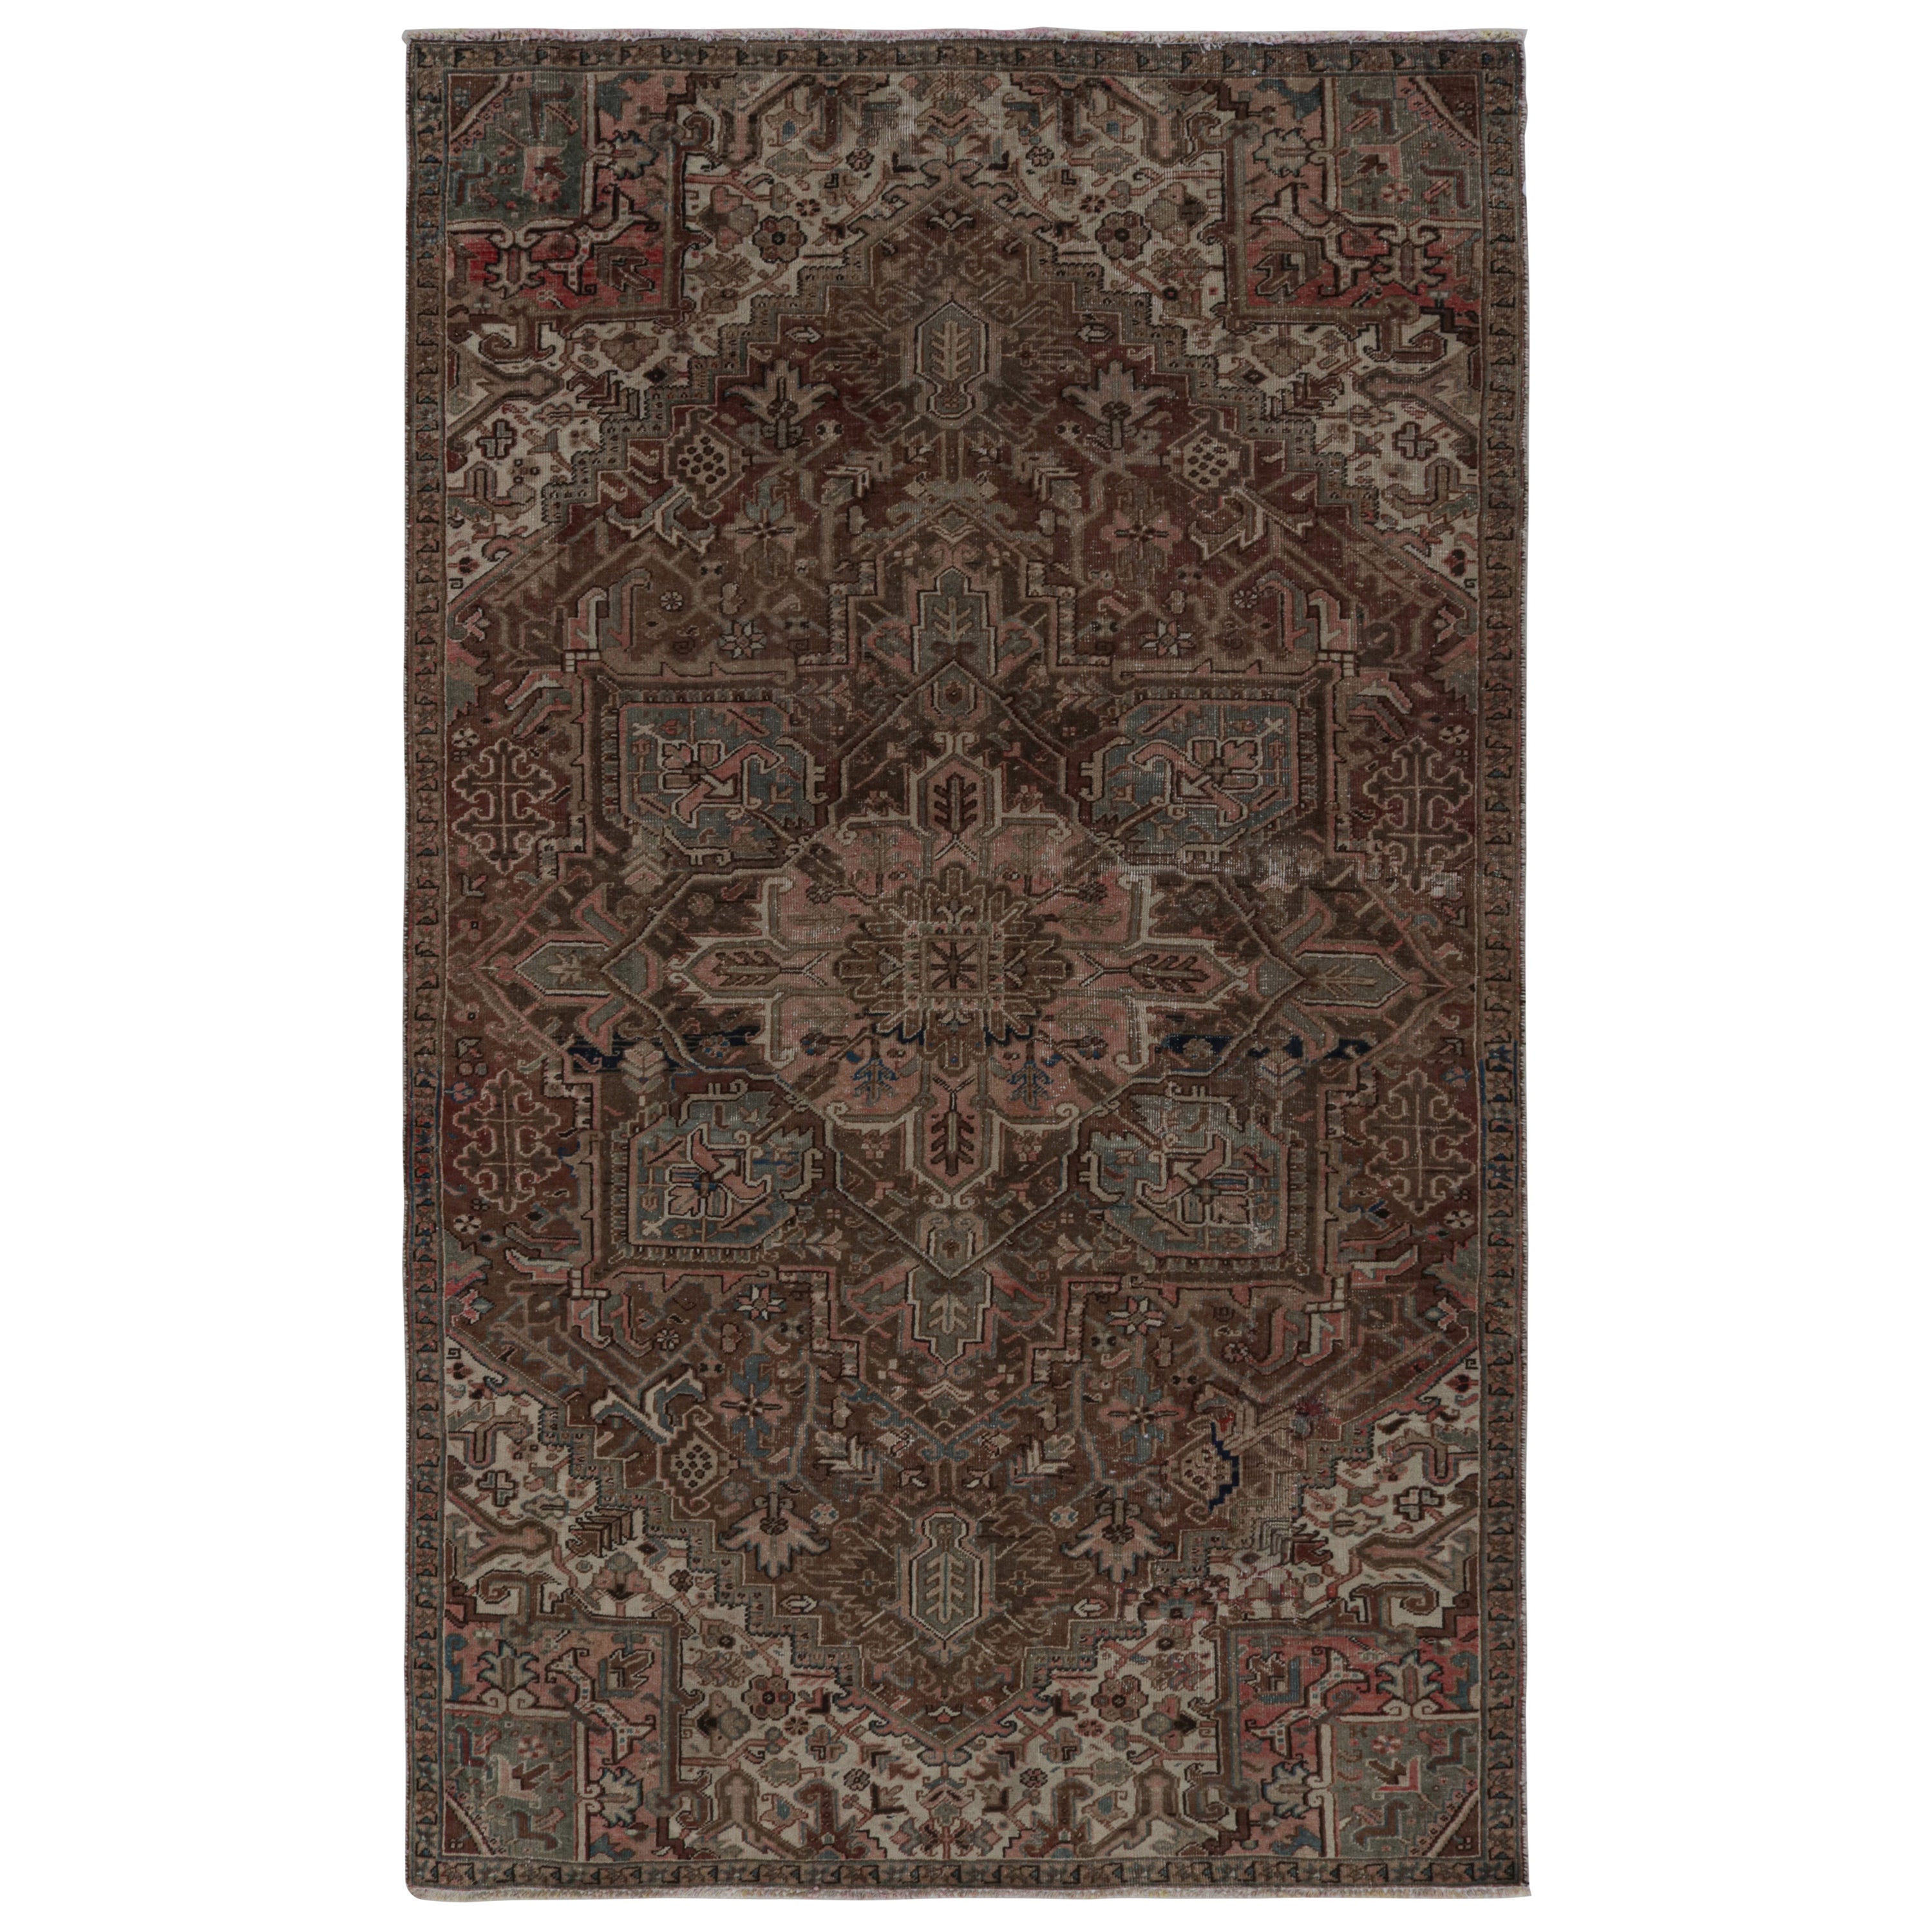 Vintage Persian Tabriz rug with Patterns in tones of Brown & Pink by Rug & Kilim